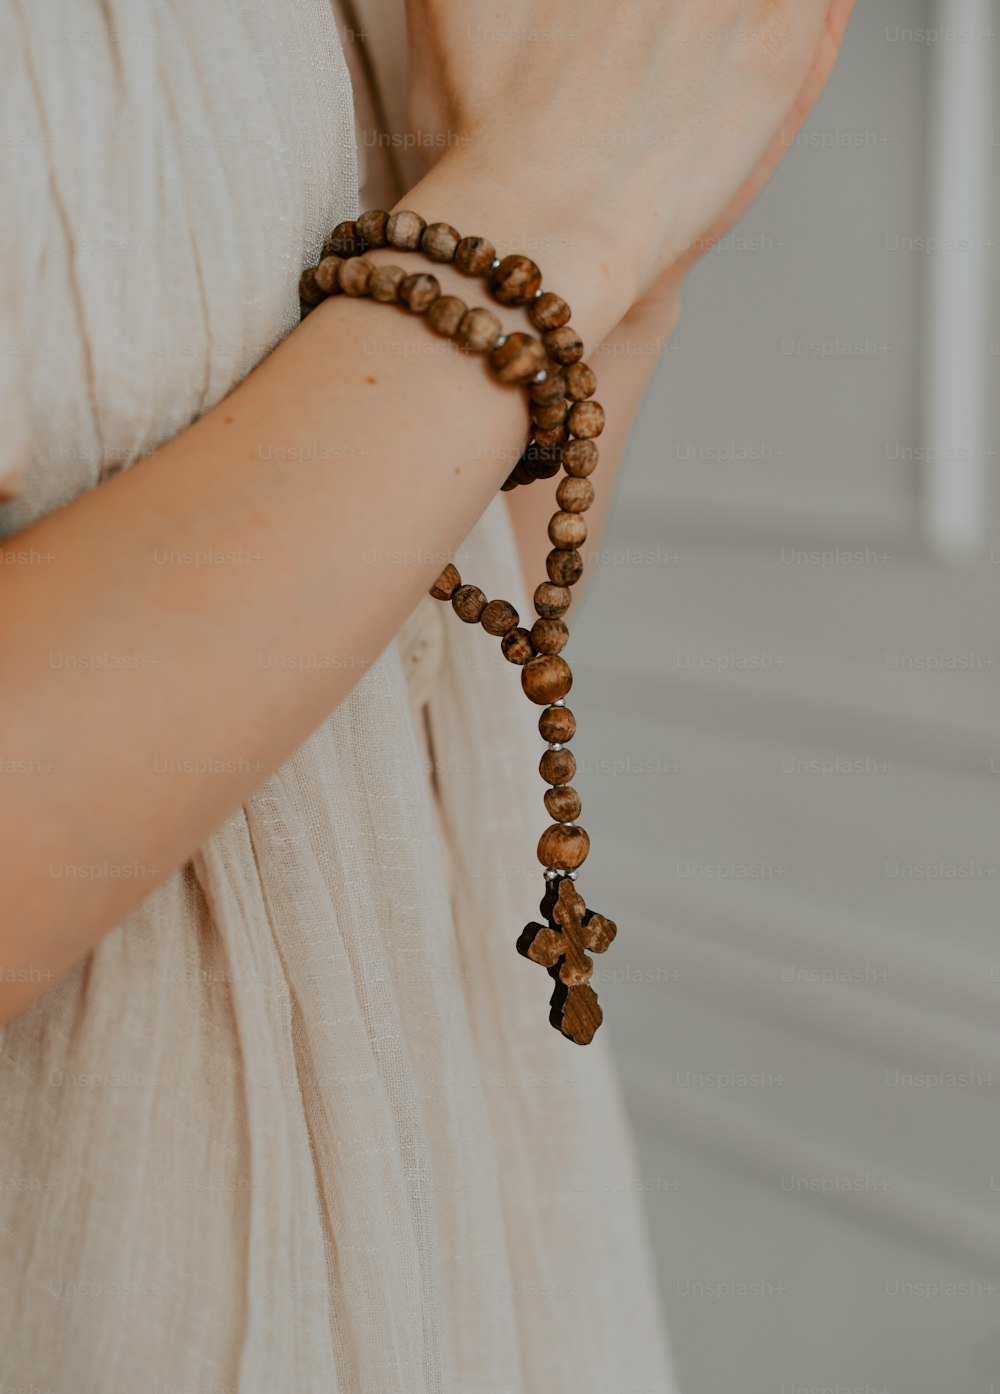 una donna che indossa un braccialetto fatto di perline